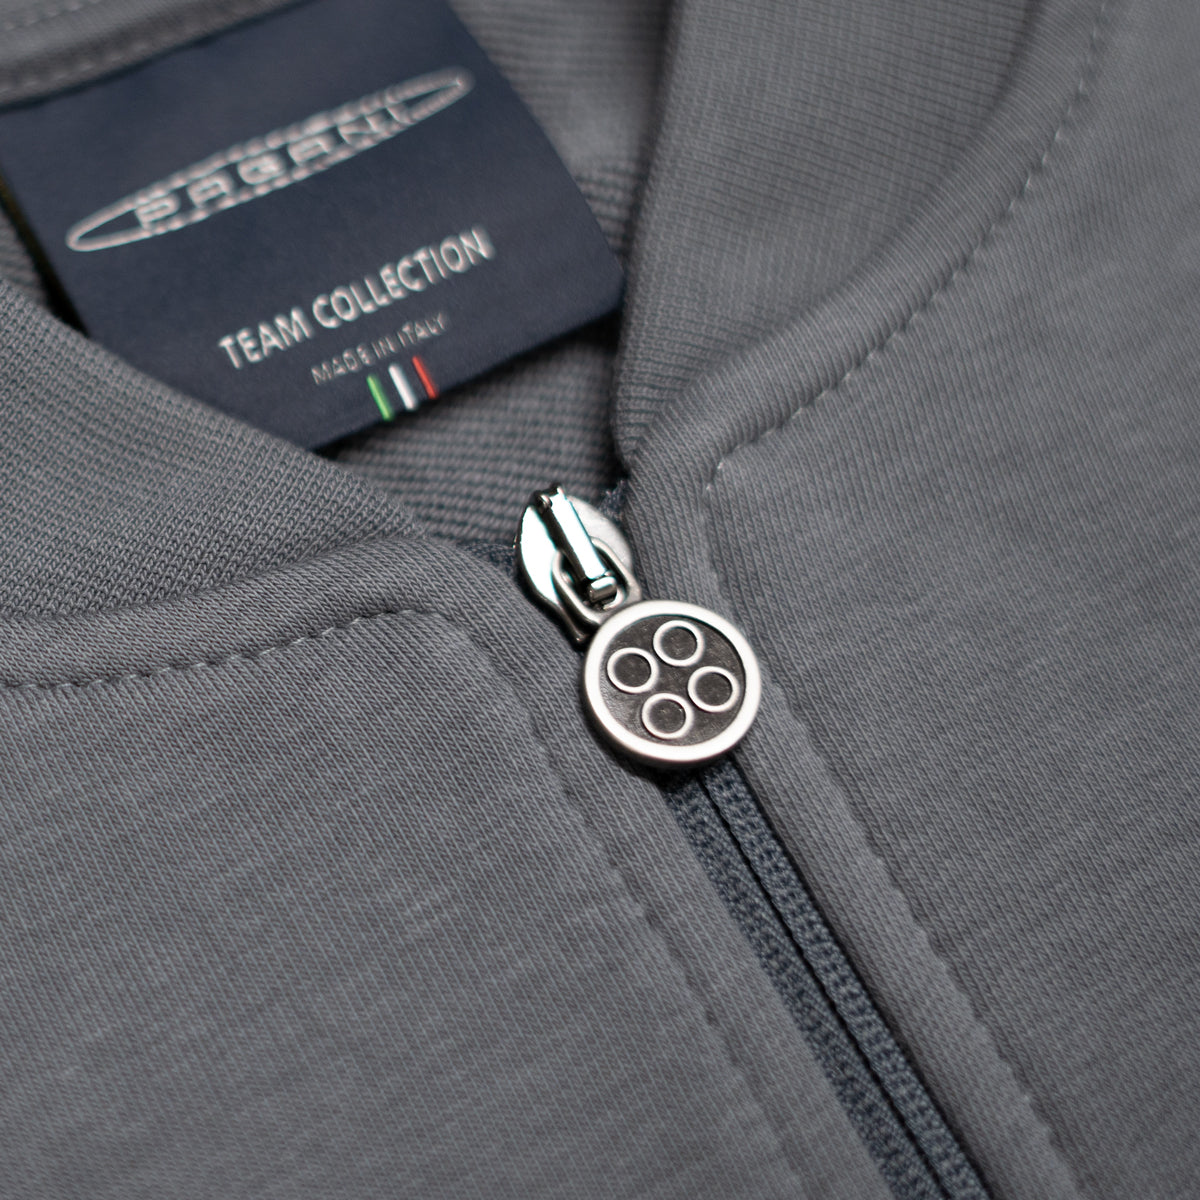 Herren-Basic-Sweatshirt Mit Durchgehendem Reissverschluss Grau | Team Collection